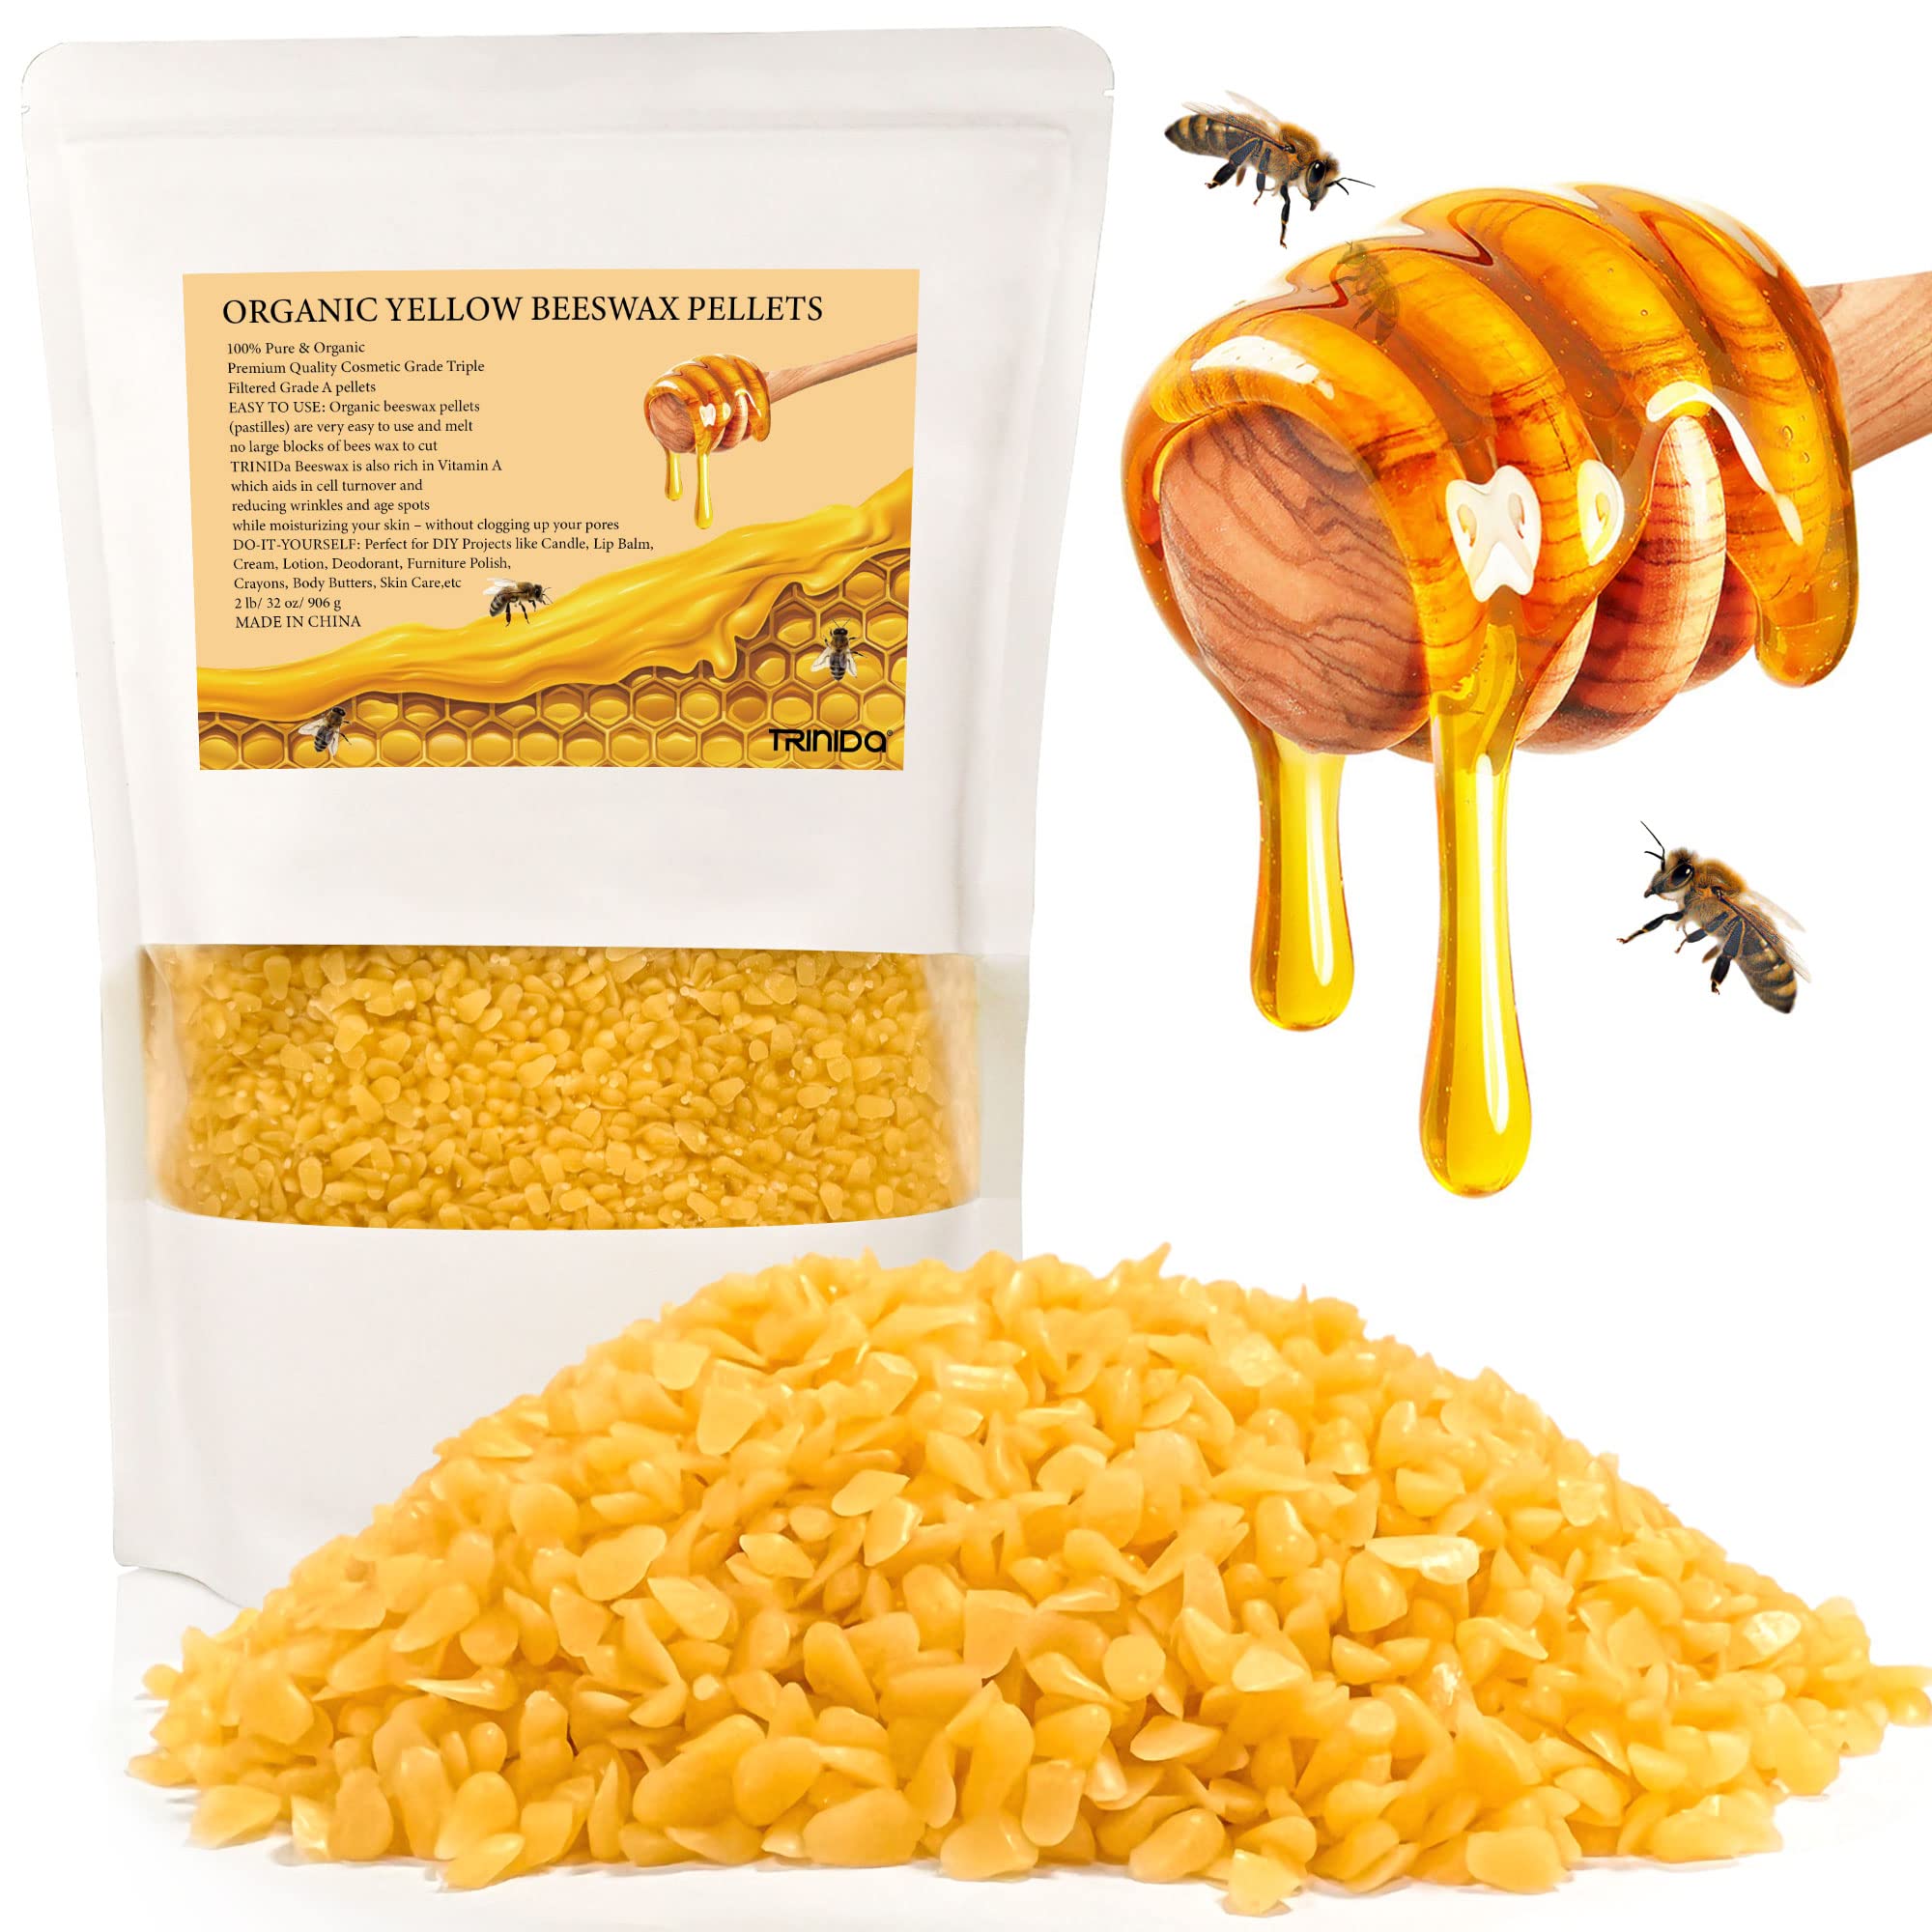 Yellow Beeswax Pellets 1lb (16oz), Pure, Natural, Organic, Bees